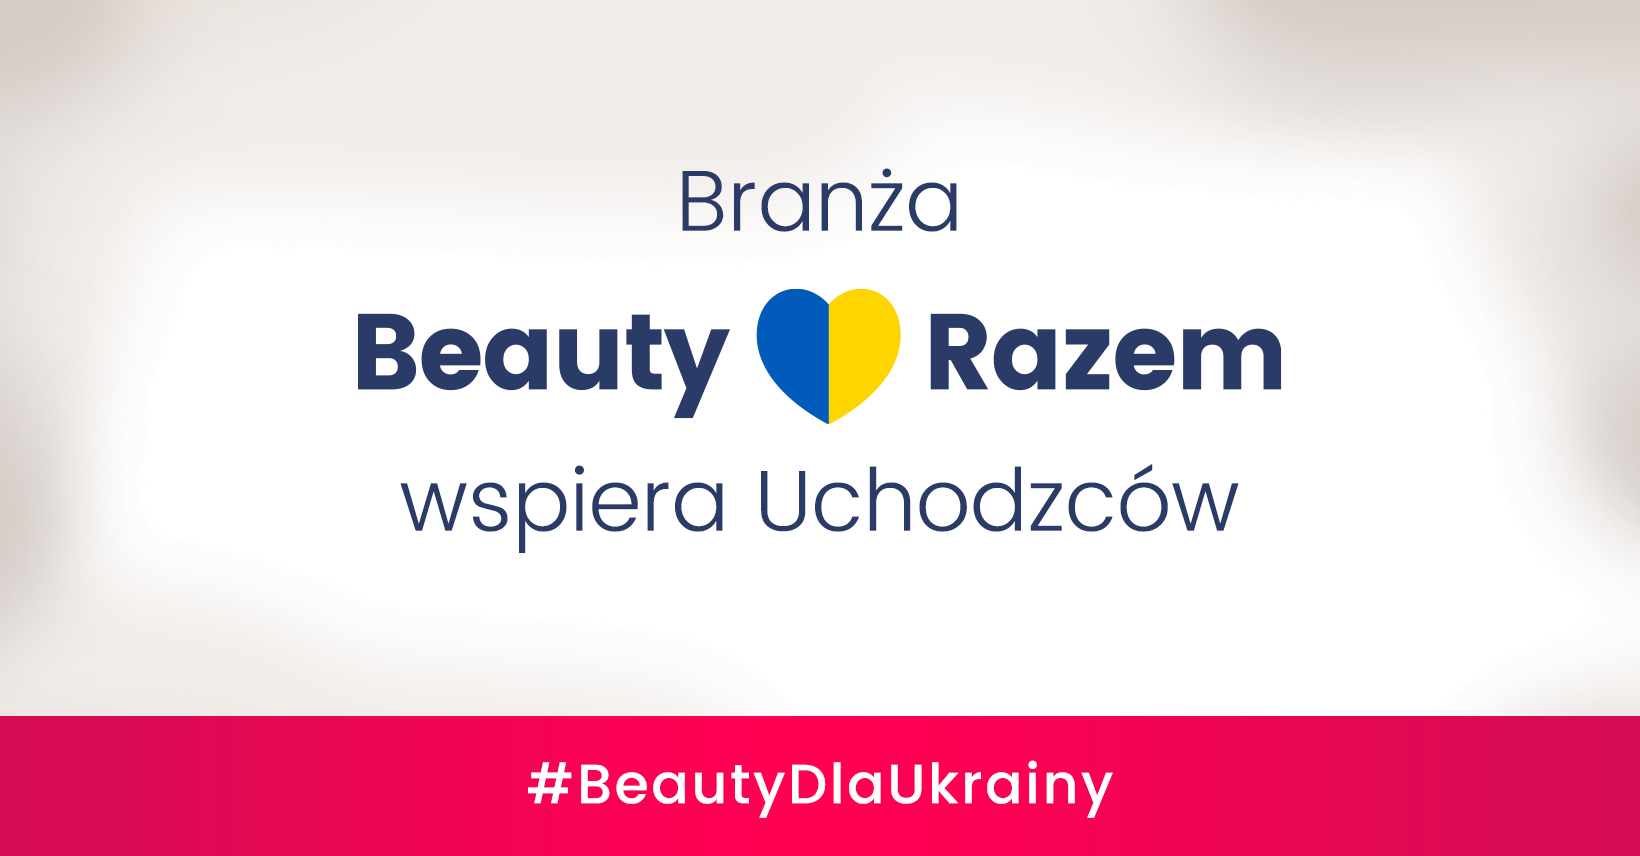 Branża Beauty Razem Dla Ukrainy